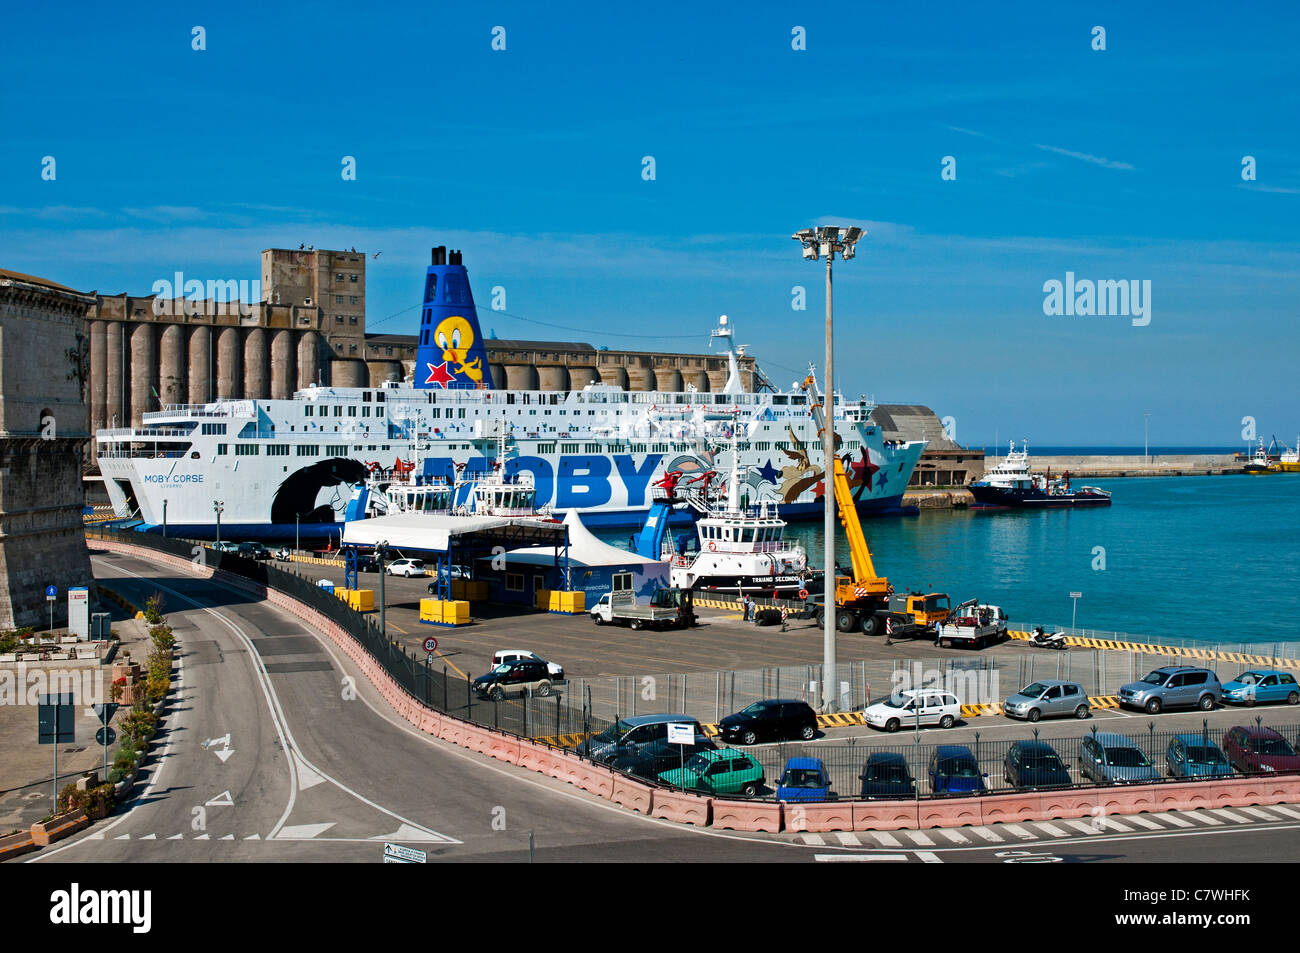 Die Kreuzfahrtfähre dekoriert Moby Corse mit der Looney Tunes Lackierung, vertäut im Hafen von Civitavecchia, Italien Stockfoto